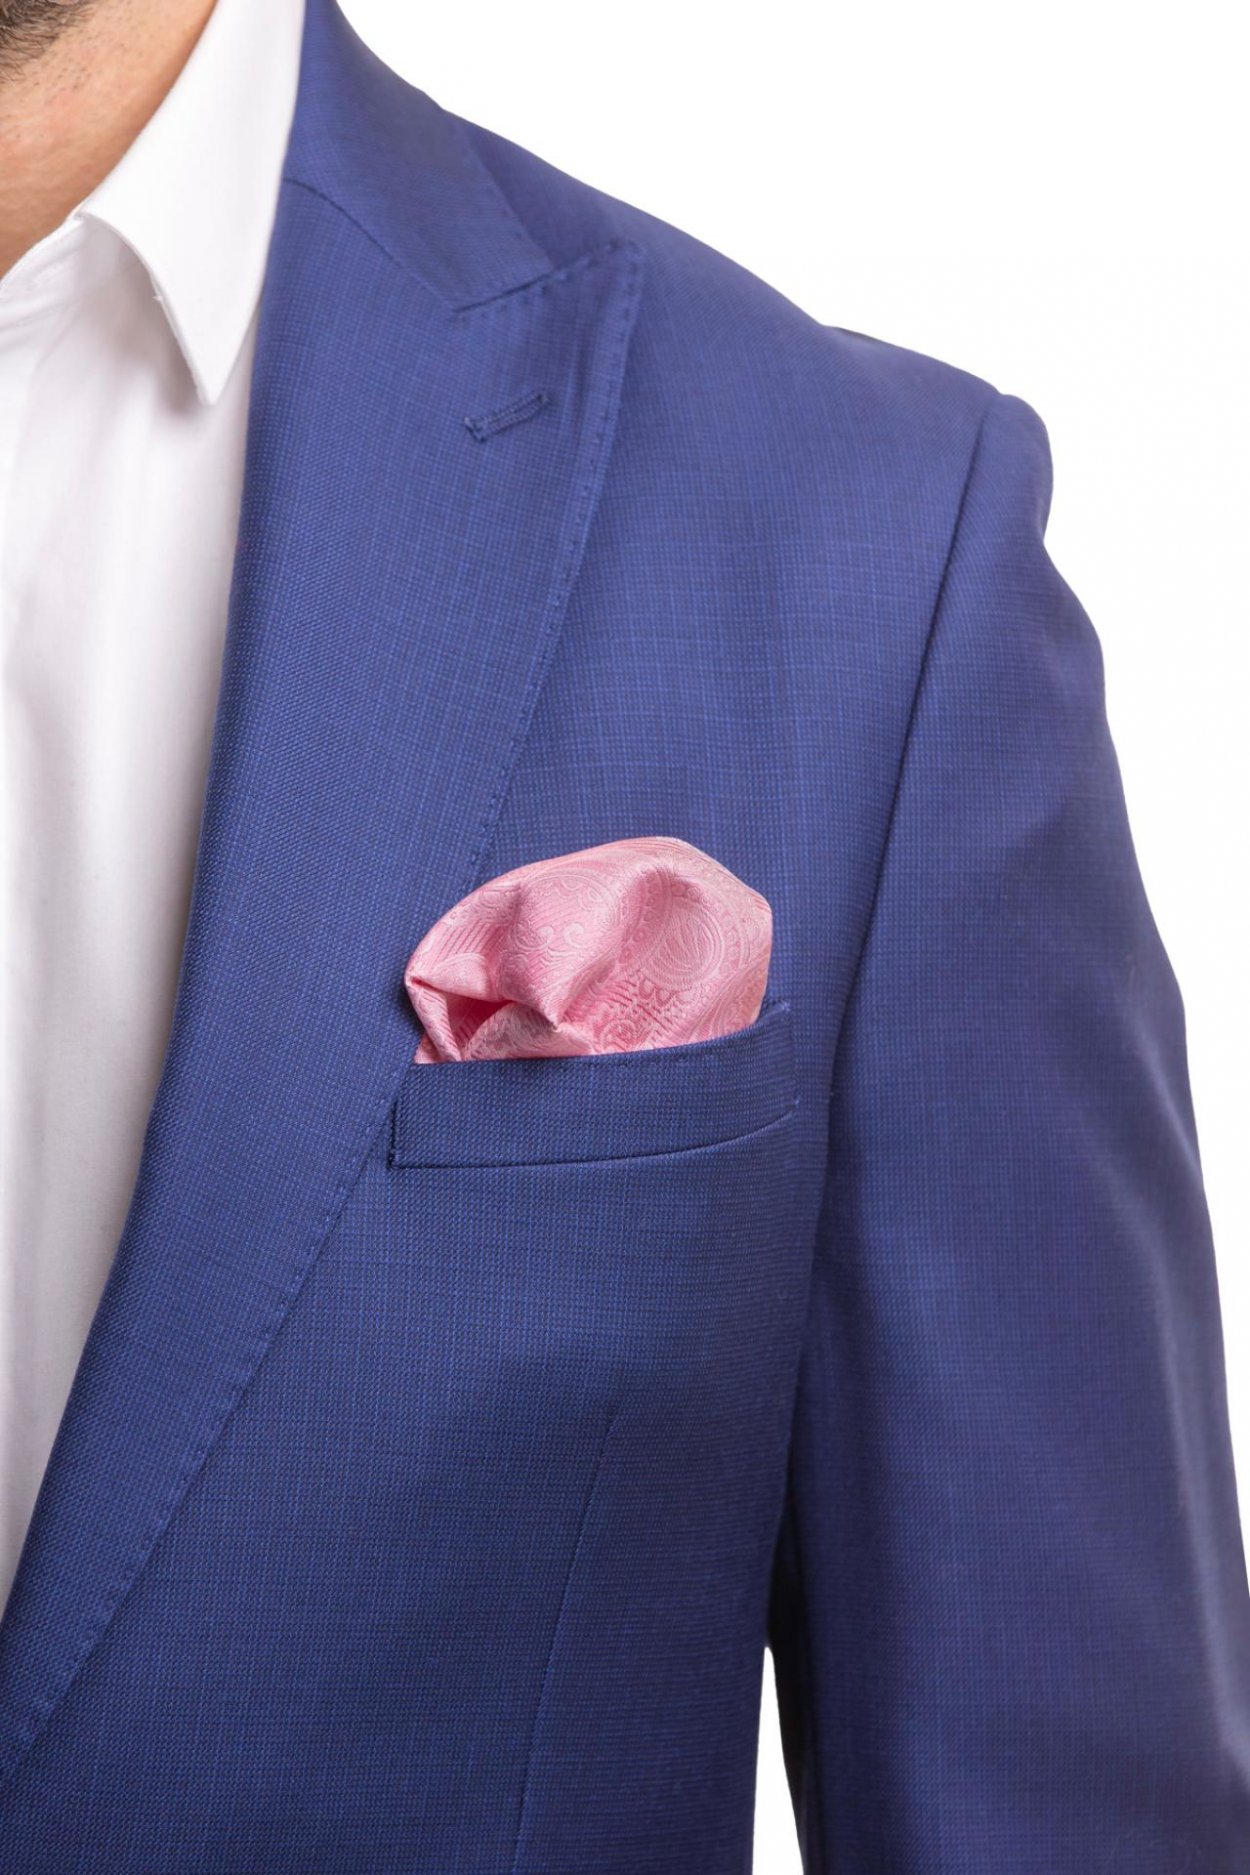 Růžový hedvábný kapesníček s jemným vzorem